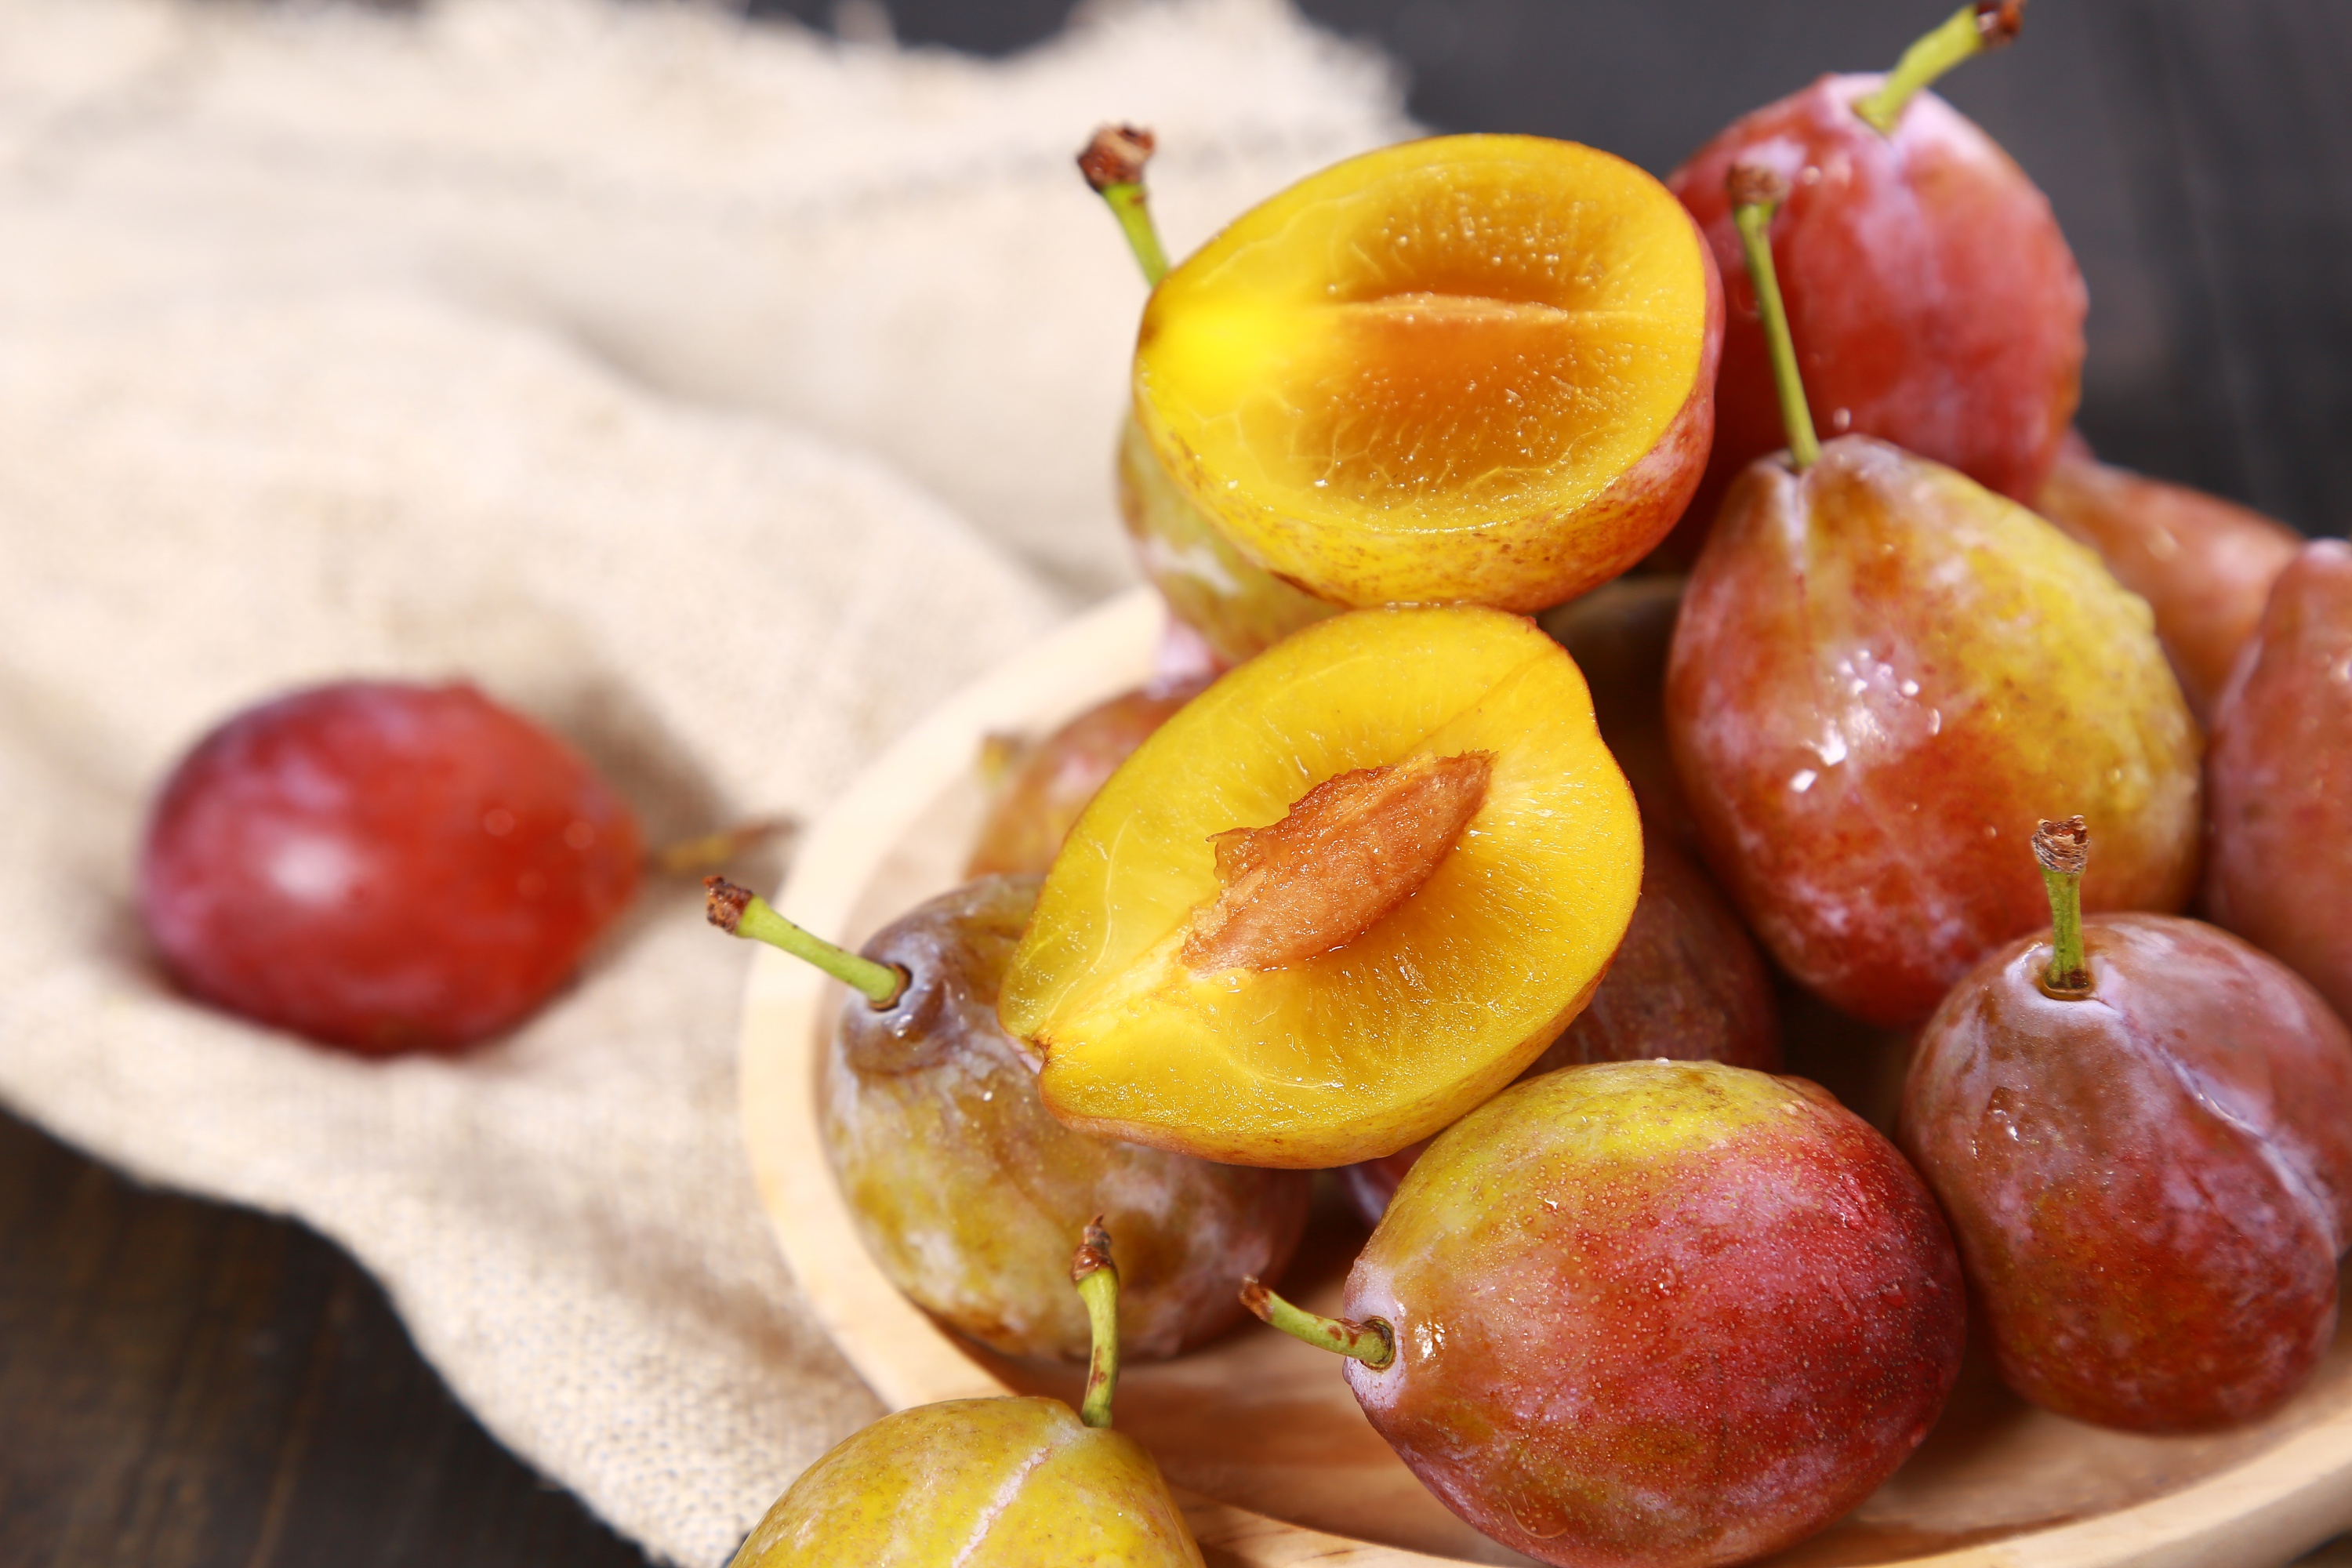 新鲜红褐鹅莓 库存照片. 图片 包括有 产物, 结构树, 鹅莓, 新鲜, 黄色, 食物, 常青树, 工厂 - 225173512